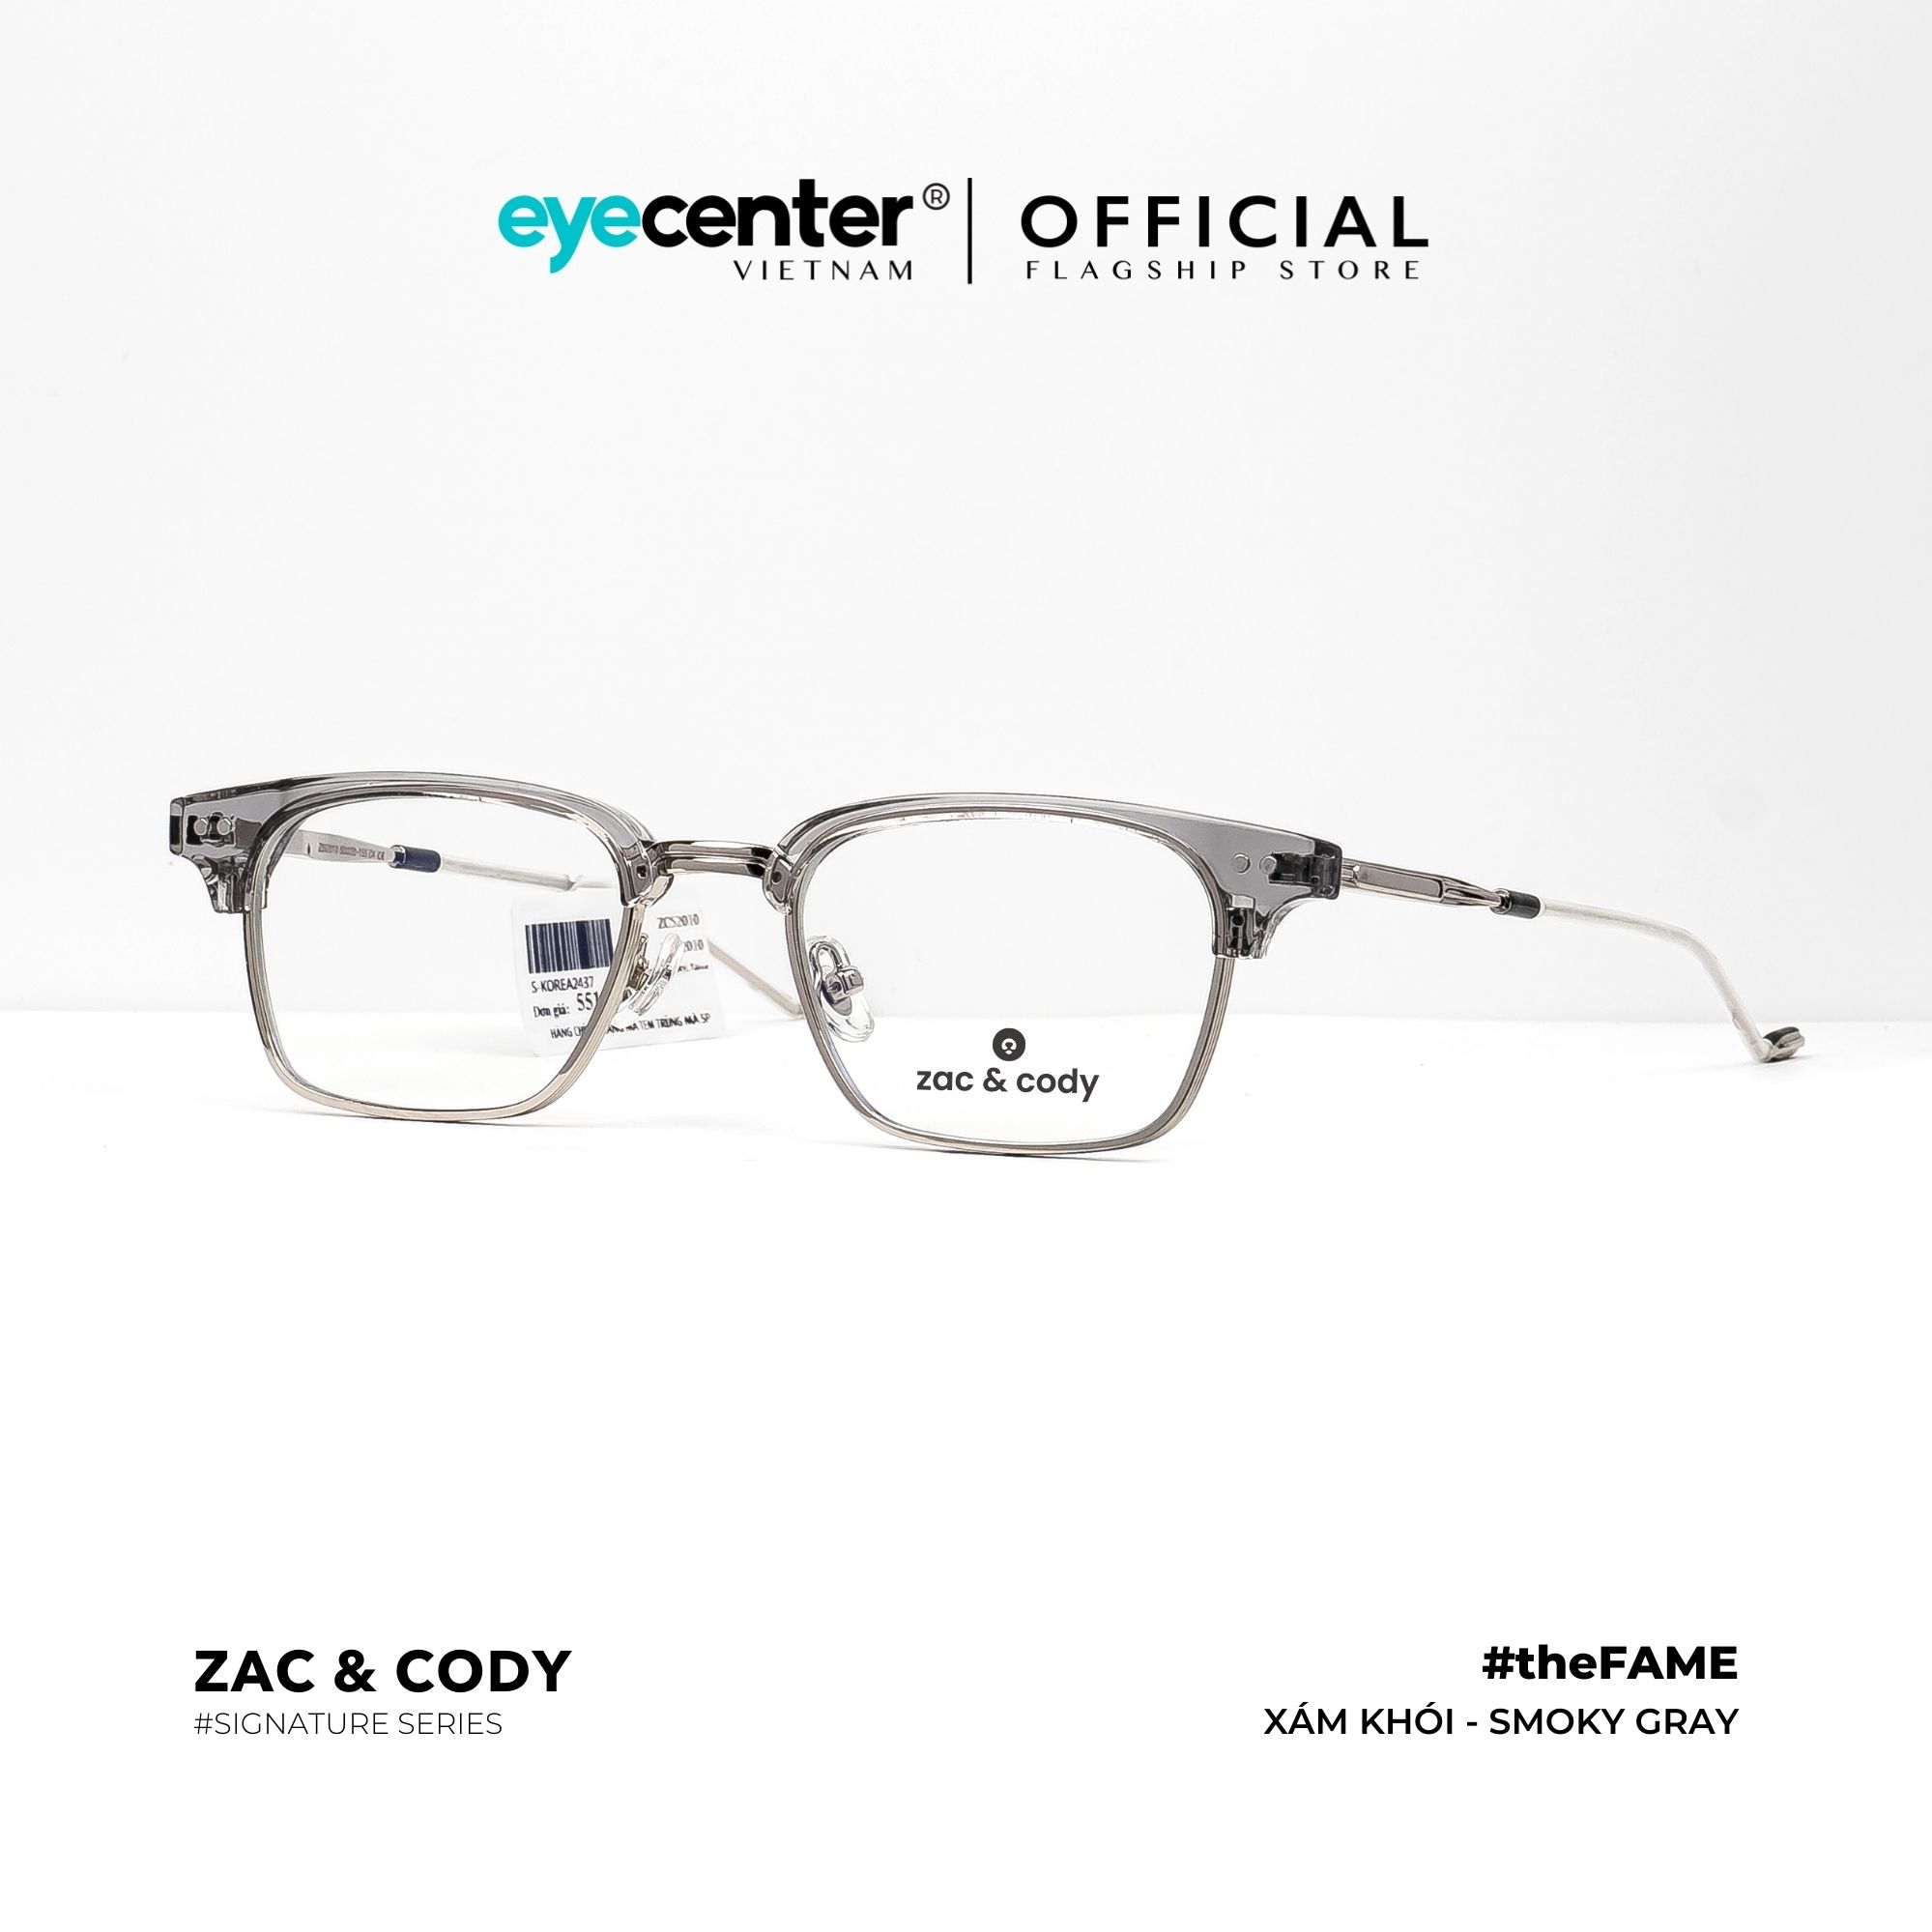 Gọng kính cận nam nữ #theFame chính hãng ZAC & CODY A21 kim loại chống gỉ cao cấp Hàn Quốc...